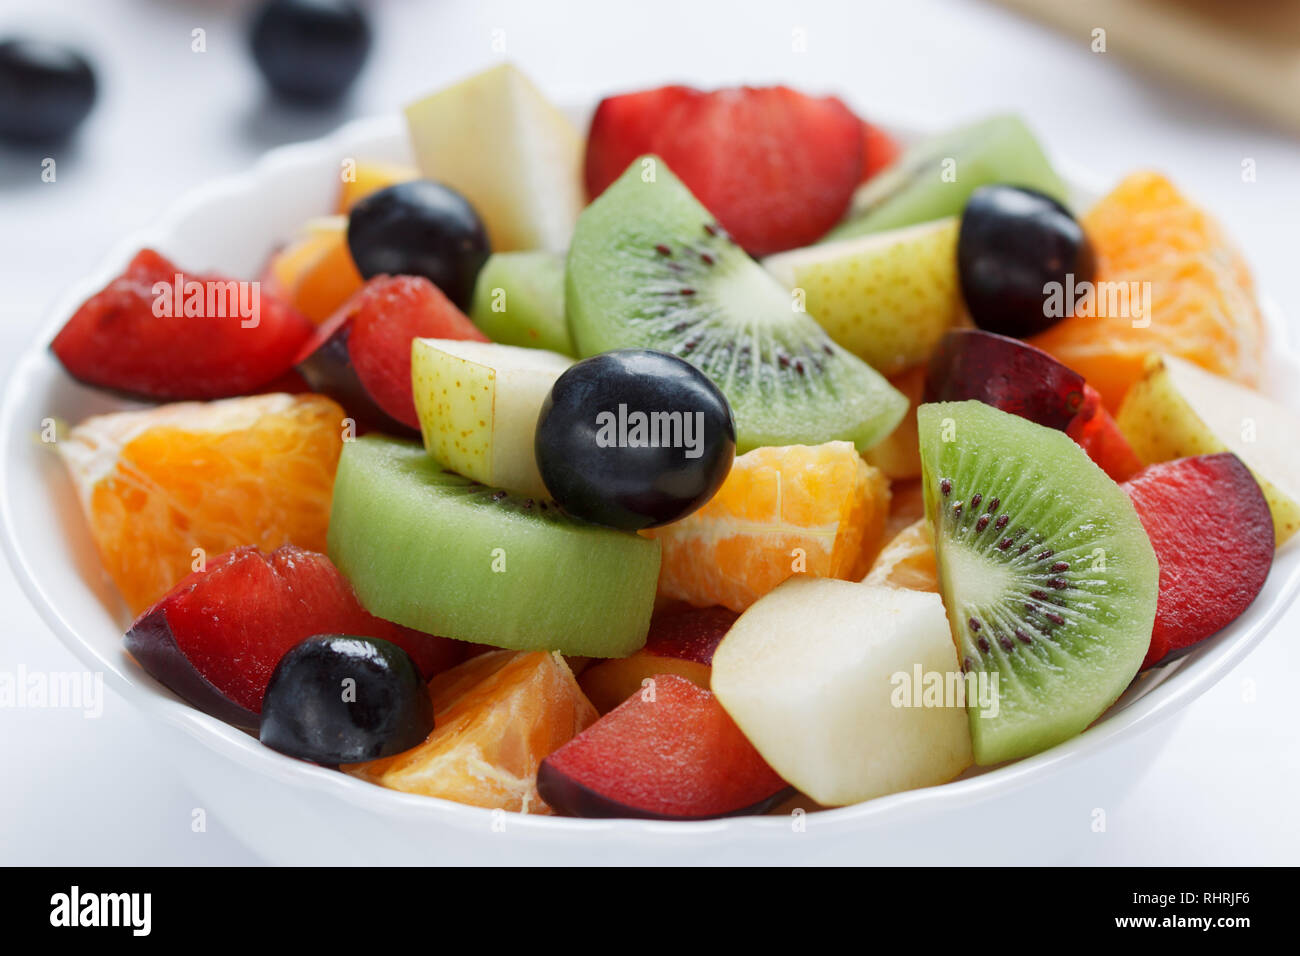 Insalata fresca da kiwi, arance, prugne e altri frutti vicino. Uno stile di vita sano. Cibo vegetariano. Foto Stock